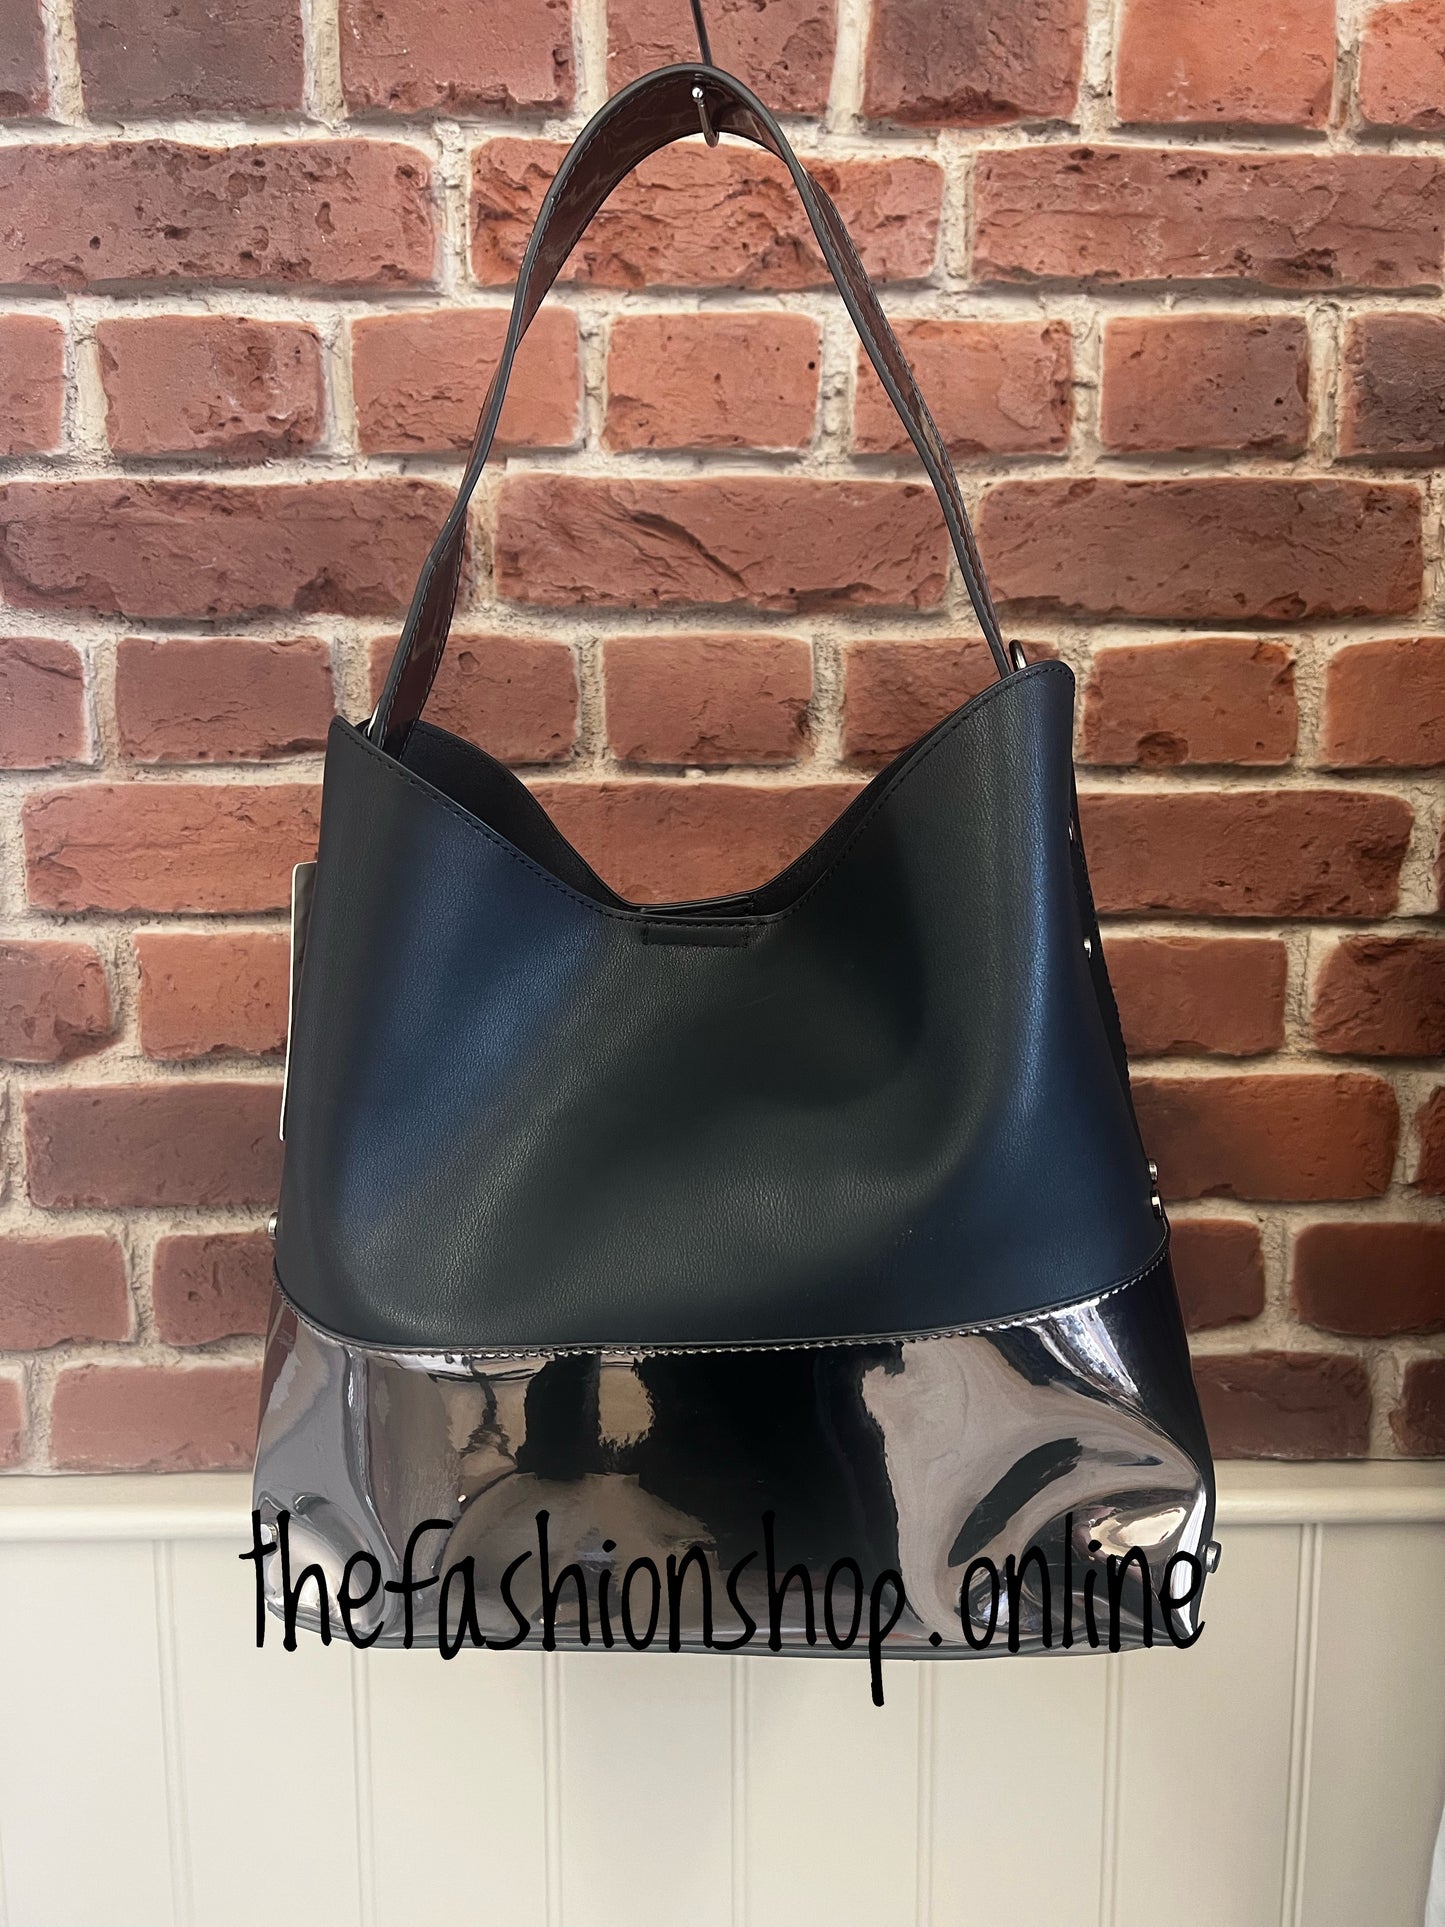 Black and metallic bag in bag